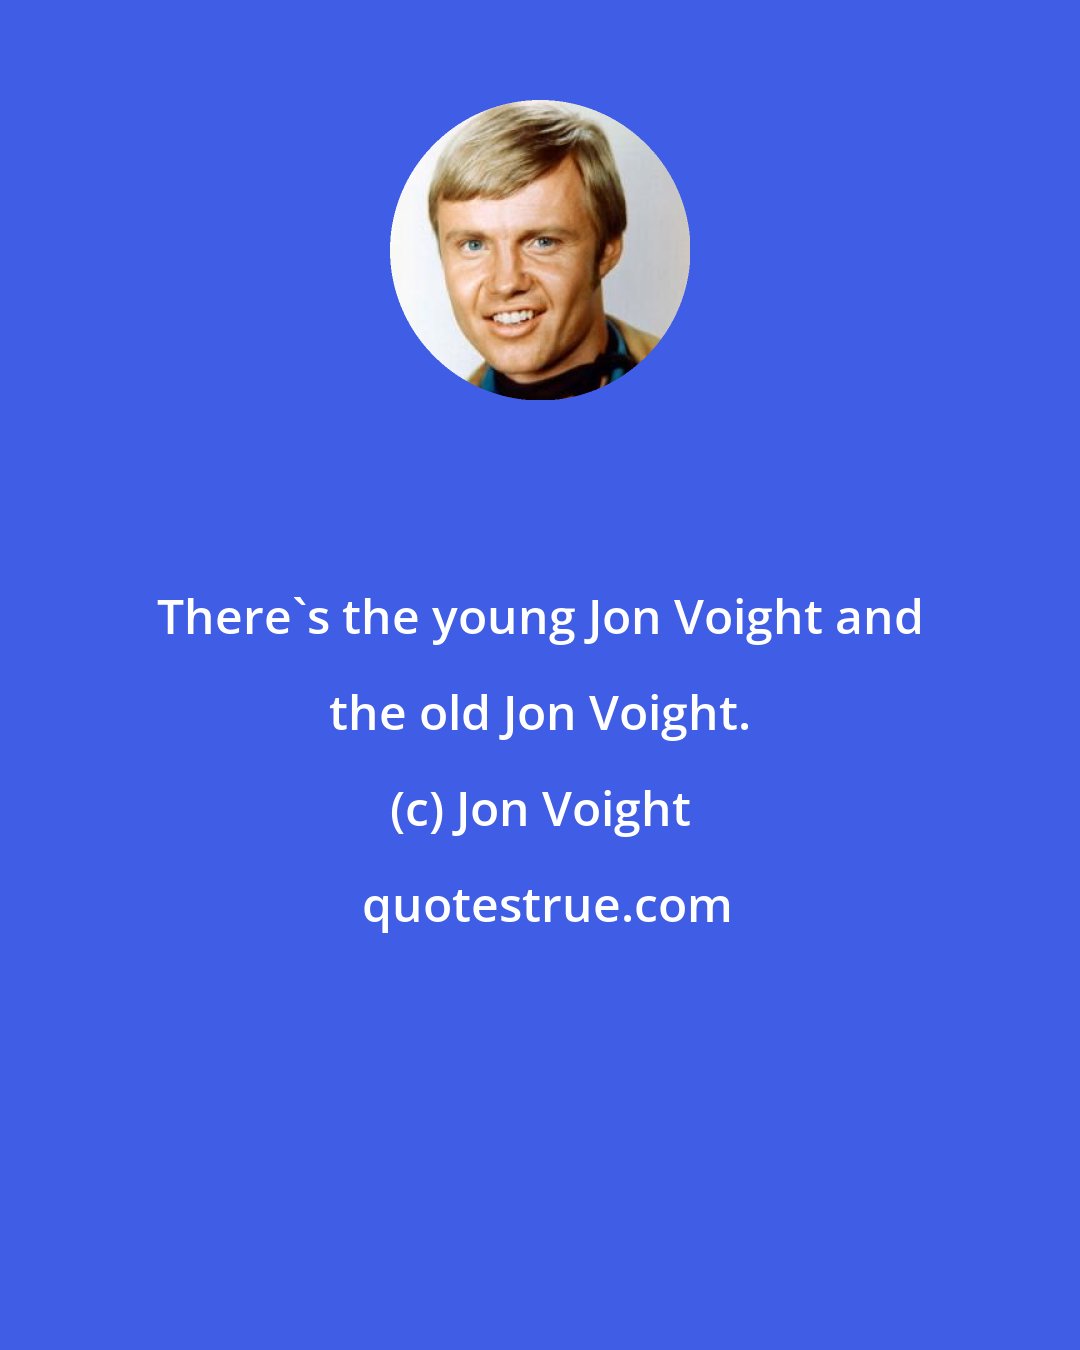 Jon Voight: There's the young Jon Voight and the old Jon Voight.